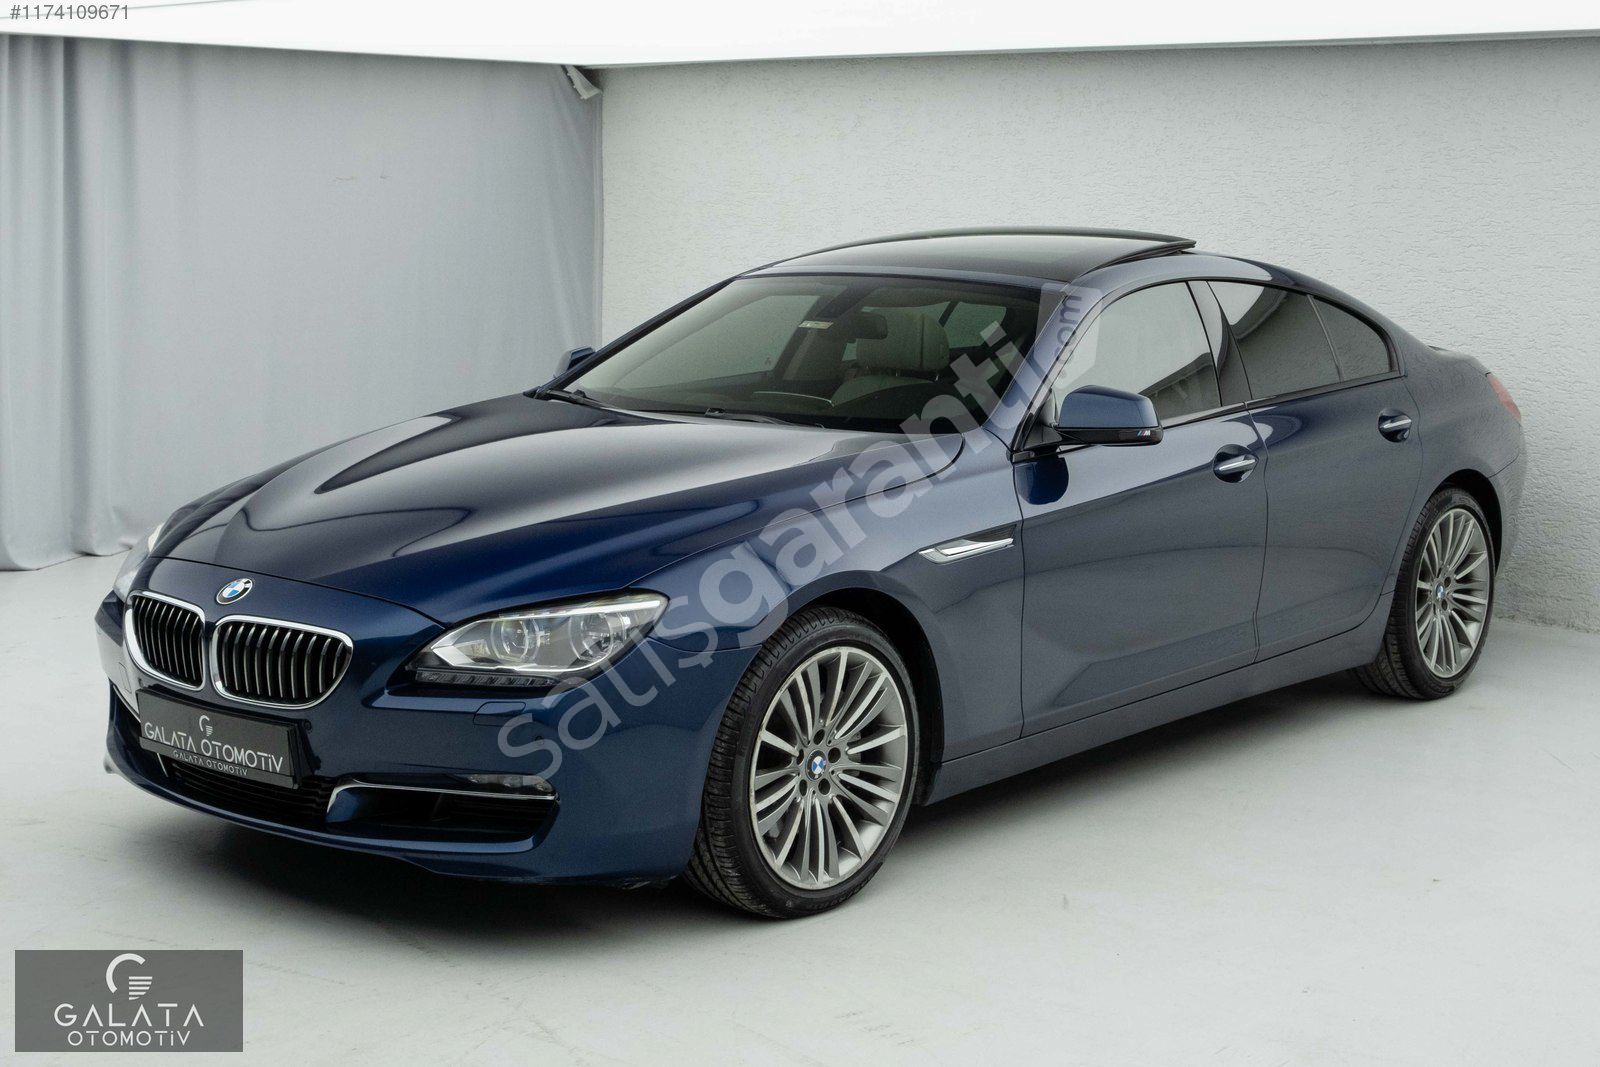 'GALATA' 2013 BMW 6.40d xDRİVE GRAN COUPE BAYİİ